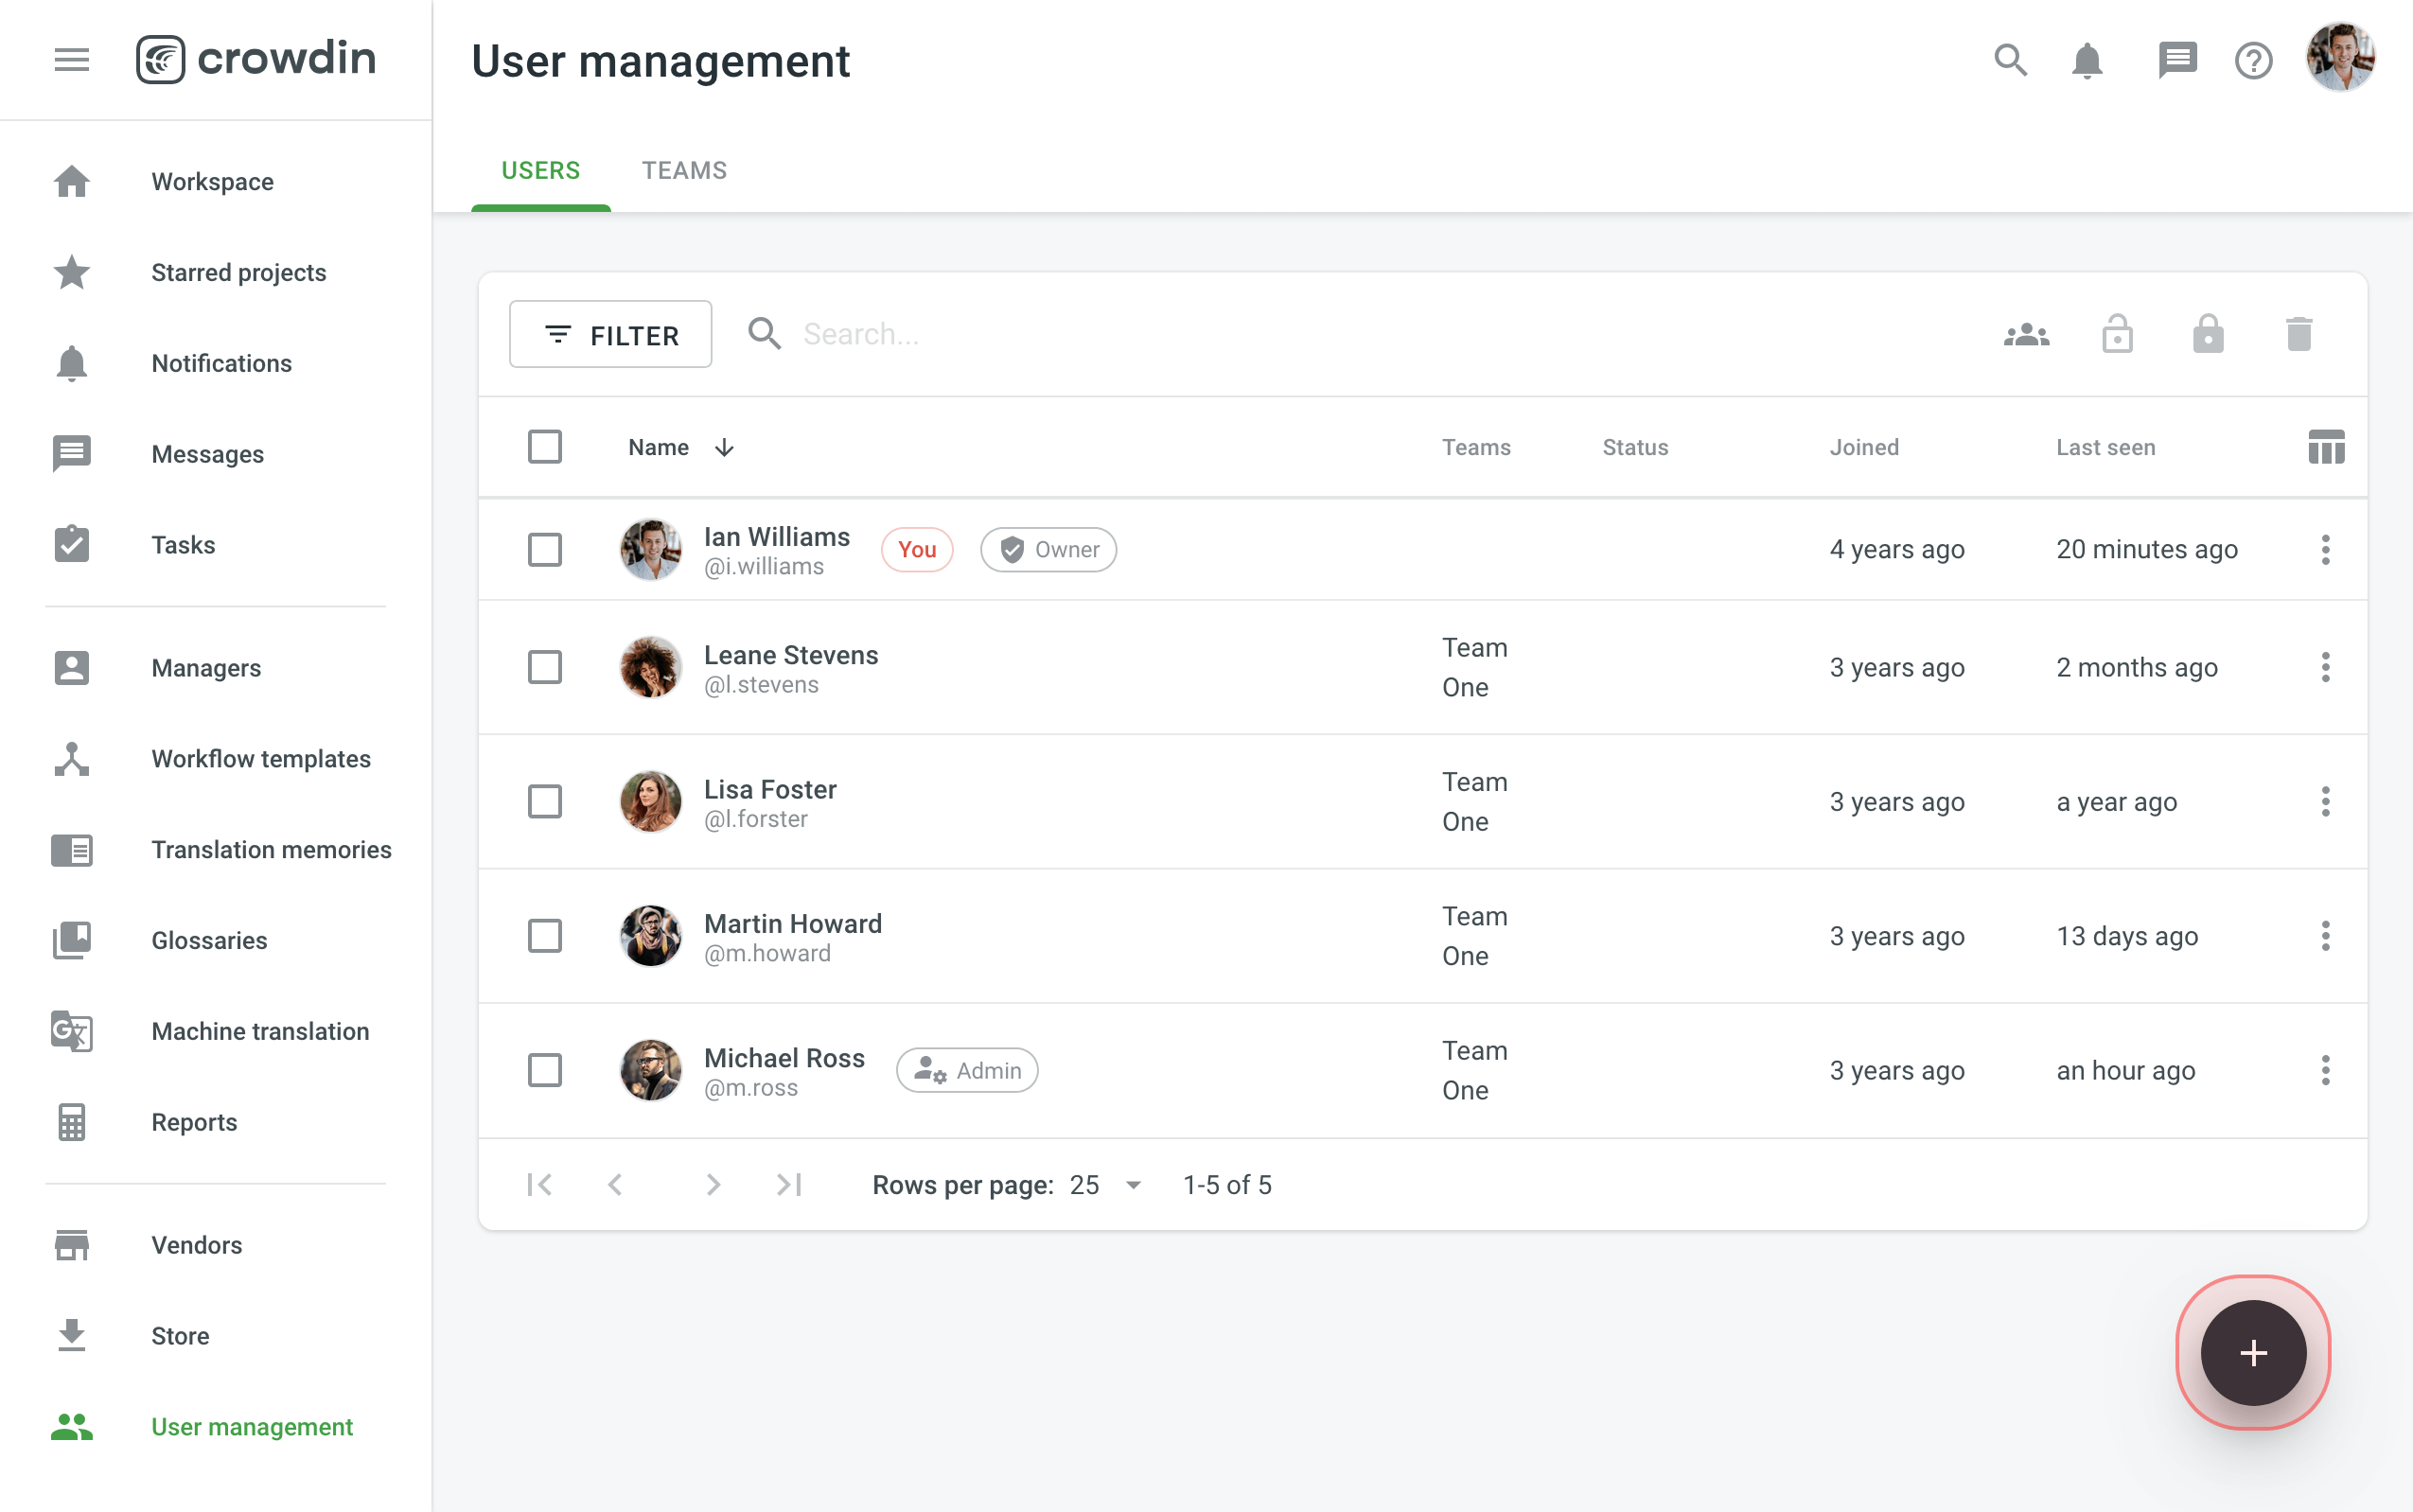 Add organization user